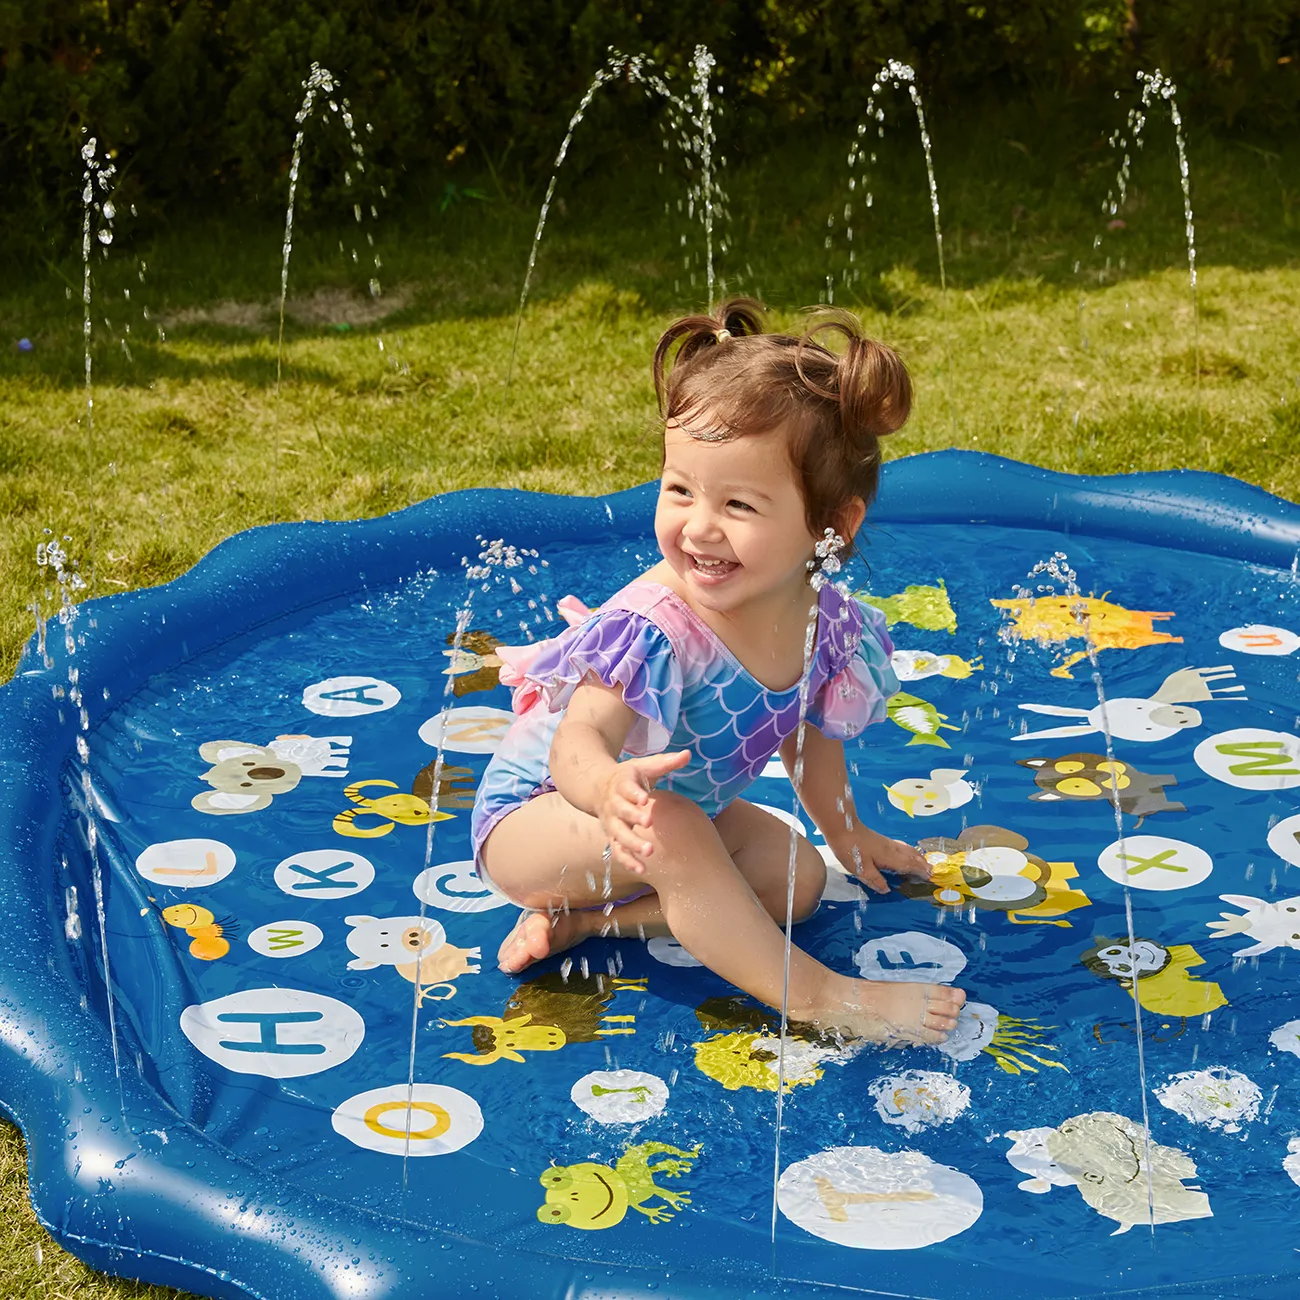 bambini splash pad spruzzi d'acqua tappetino da gioco sprinkler piscina per bambini all'aperto acqua gonfiabile giochi estivi con alfabeto Blu big image 1